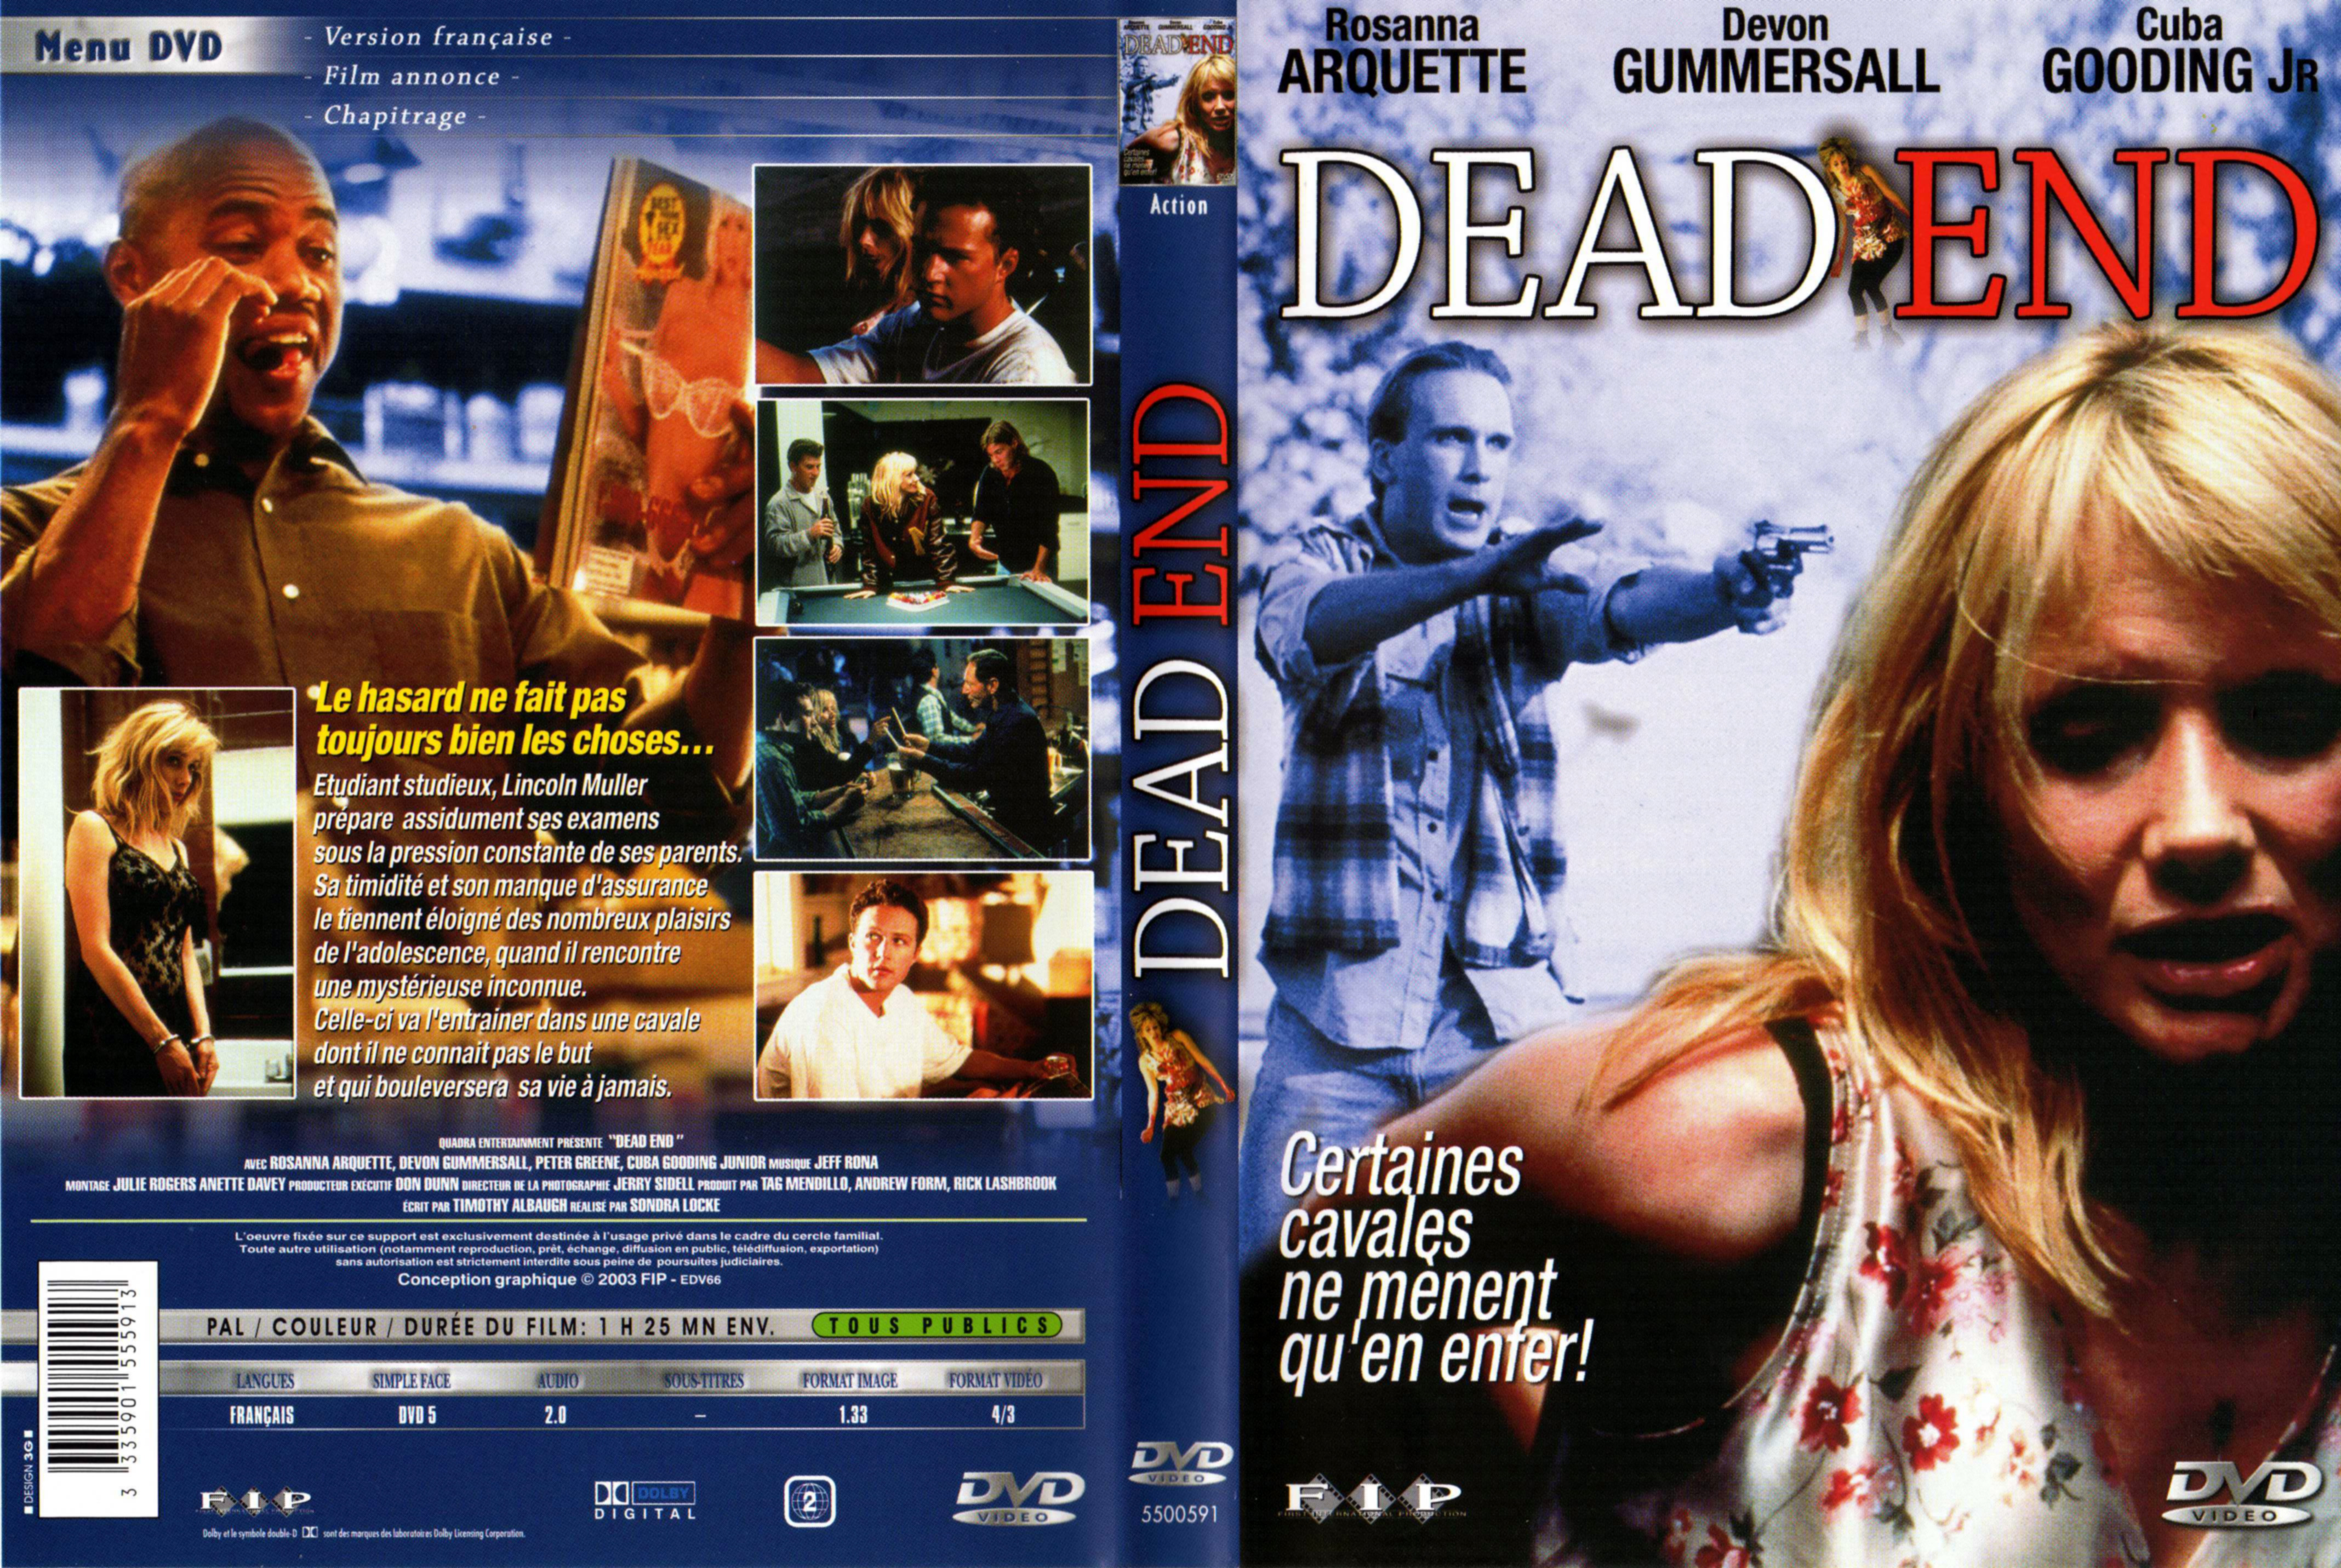 Jaquette DVD Dead end